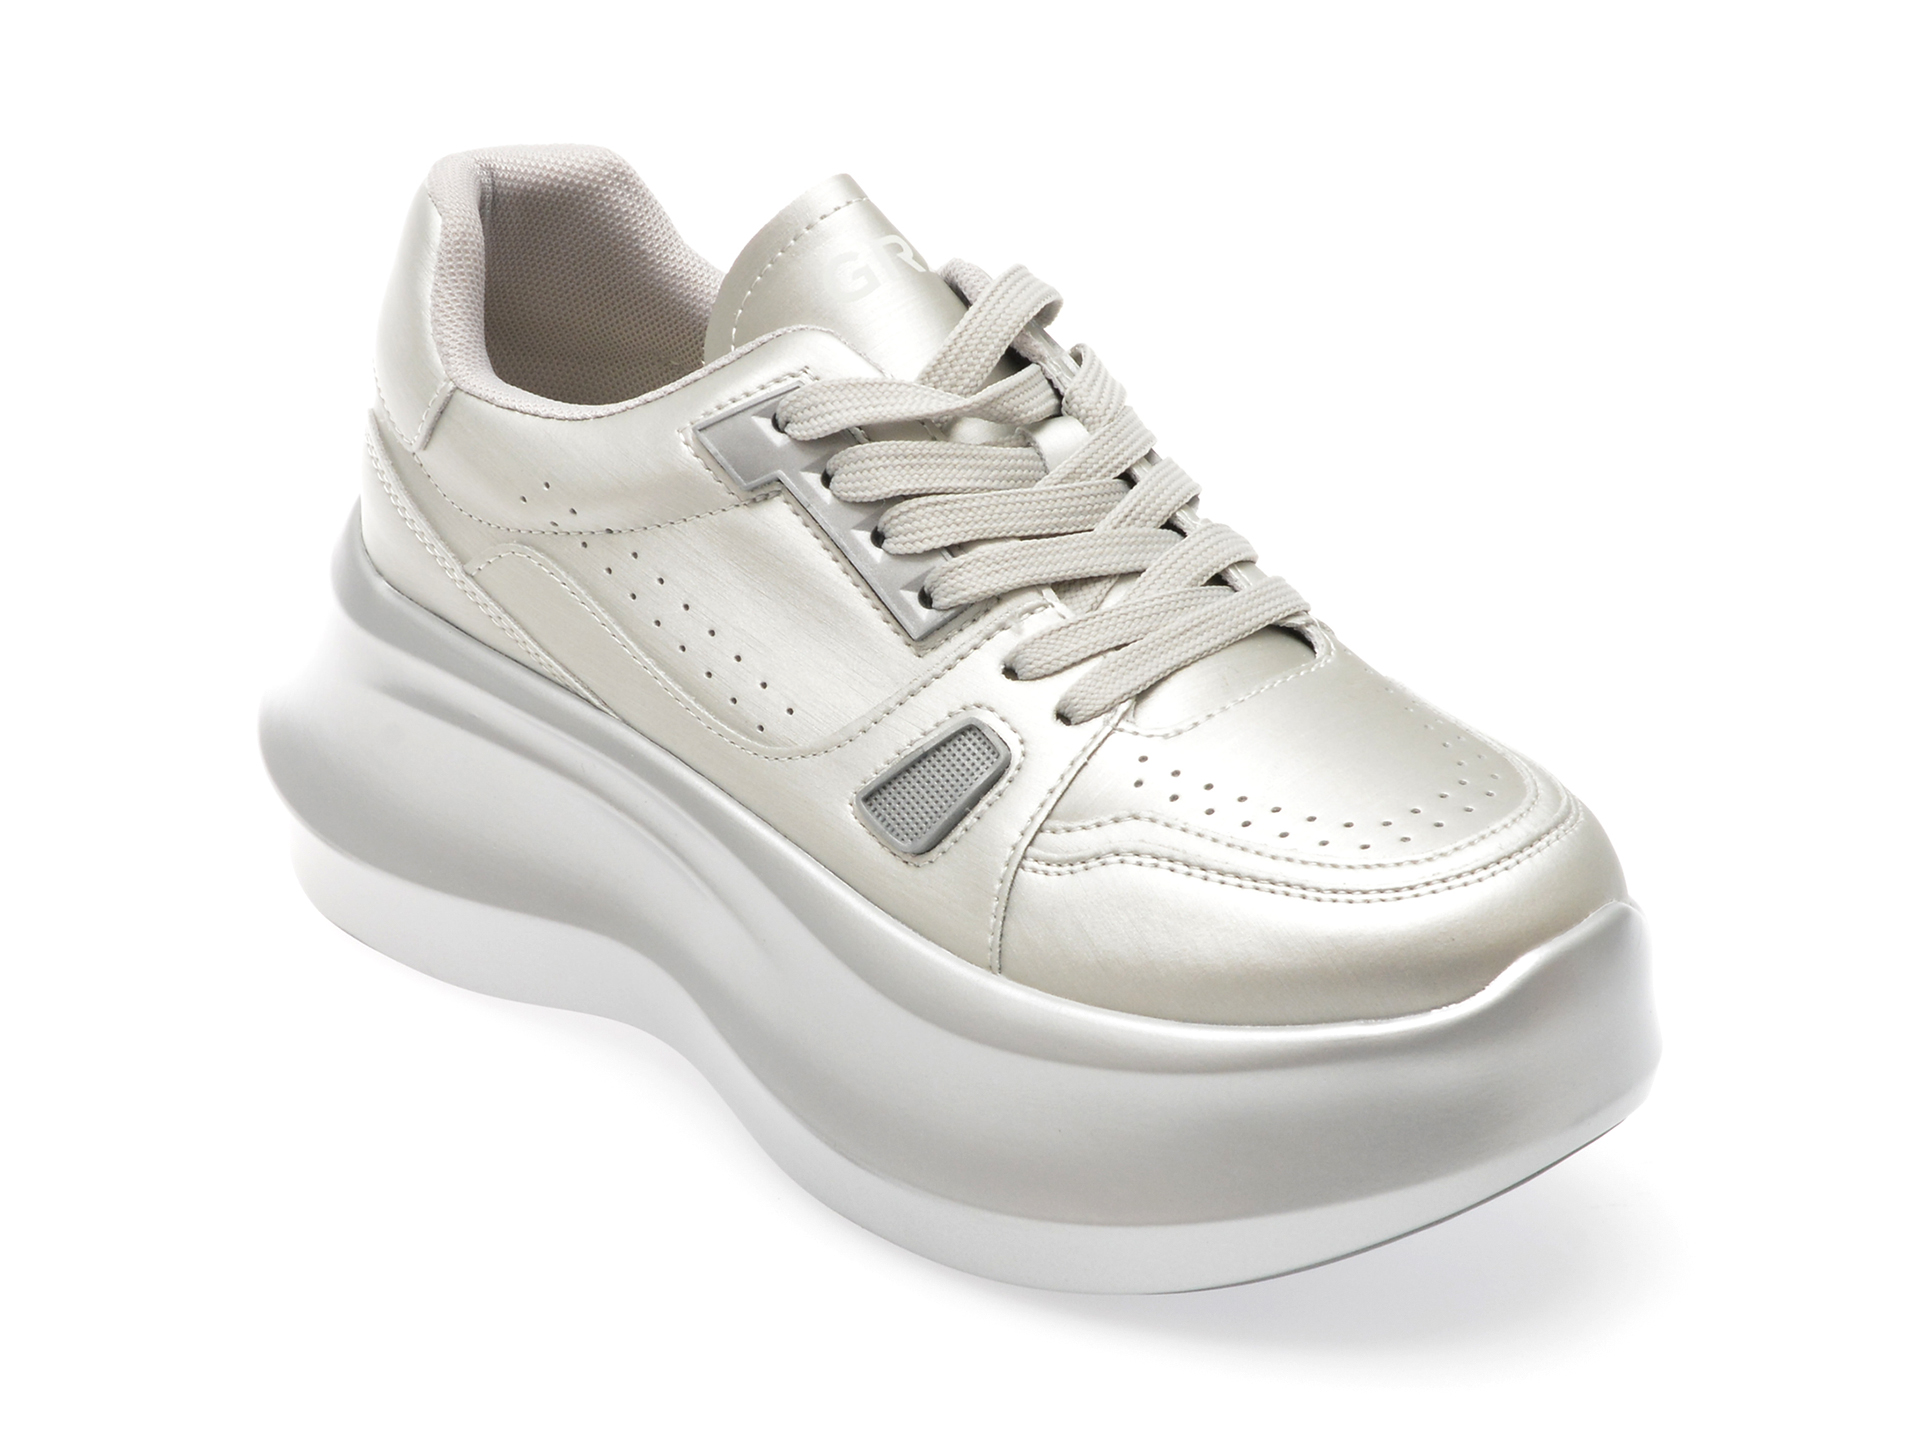 Pantofi casual GRYXX argintii, A259, din piele ecologica